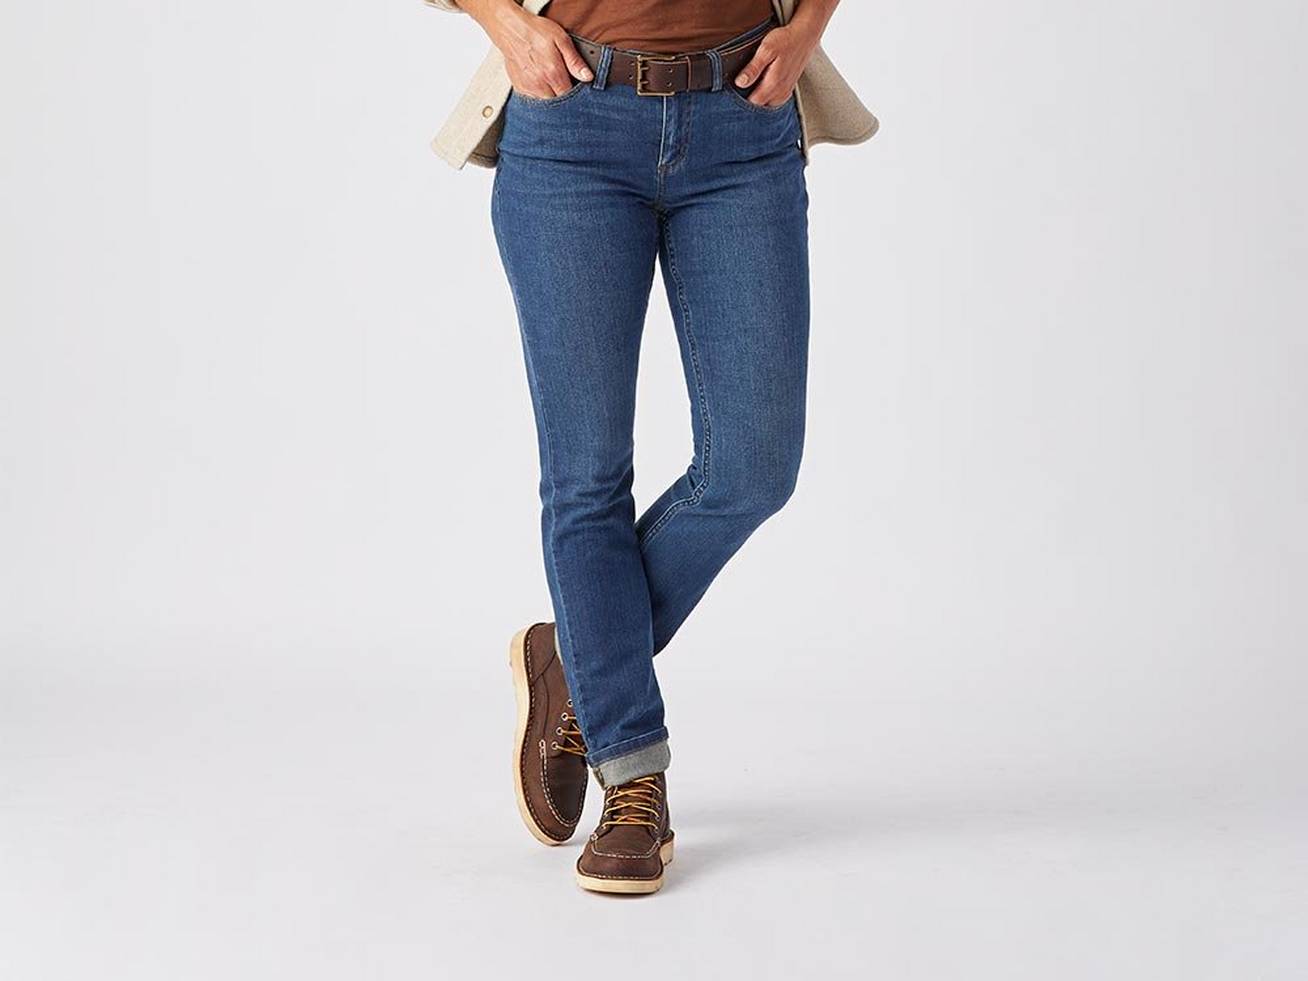 lower half of woman wearing blue jeans